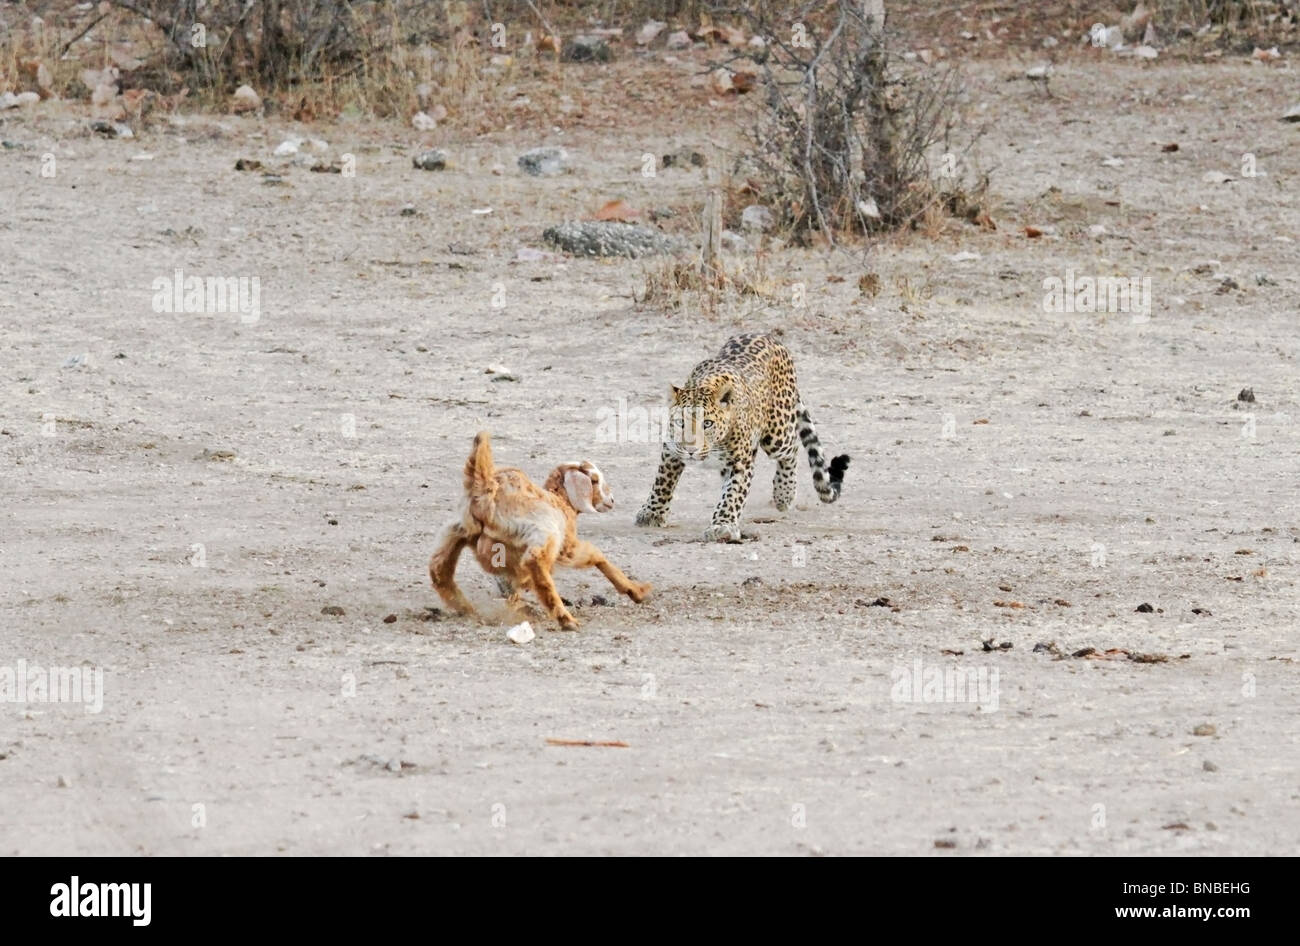 Un leopardo che attacca un bestiame nei pressi di un remoto villaggio in Rajasthan, India Foto Stock